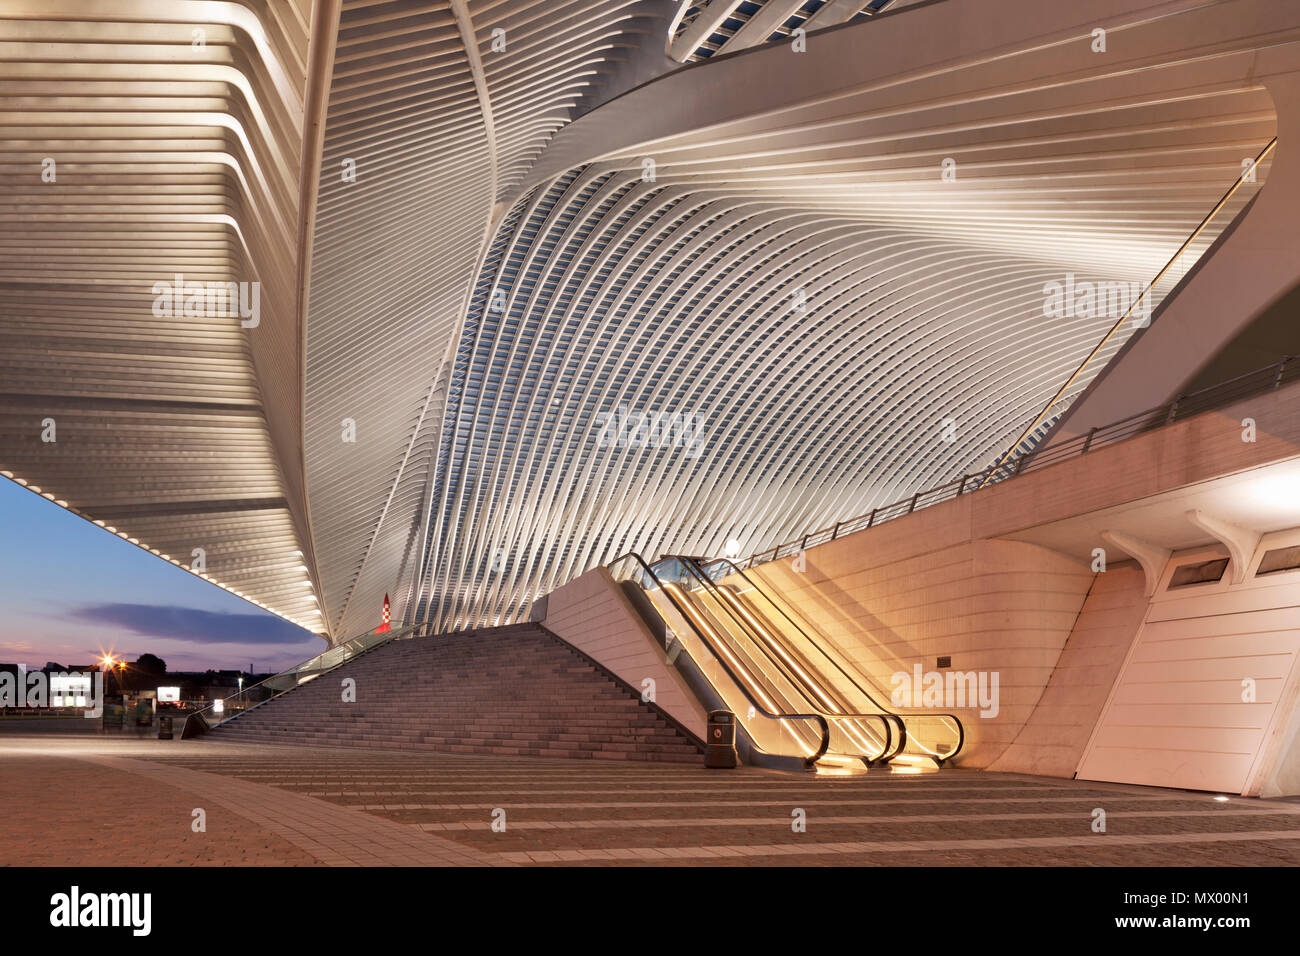 Rolltreppen an der Vorderseite von Lüttich Bahnhof Guillemins, die den Zugang zu den Plattformen geben. Architekt: Santiago Calatrava. Stockfoto